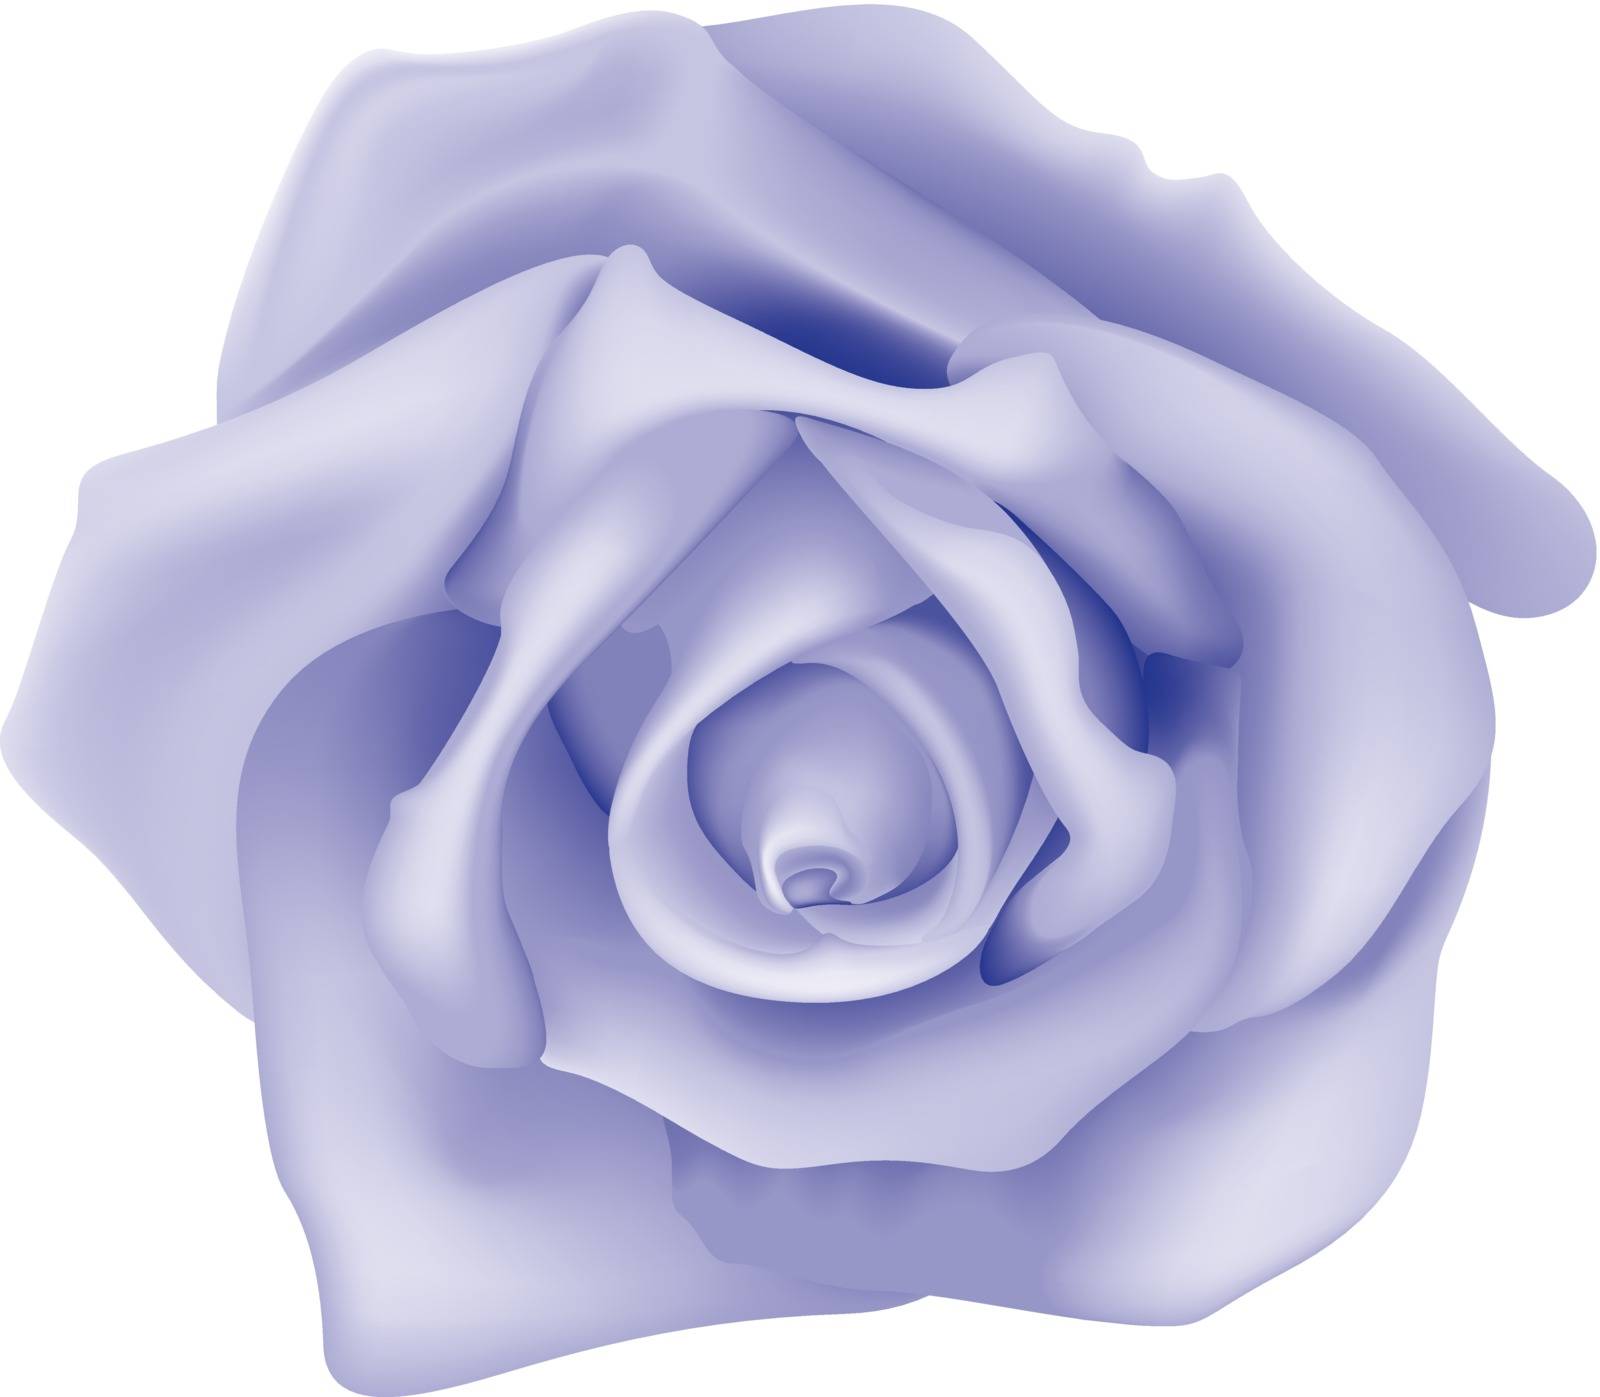 Violet Rose - Colored Illustration, Vector